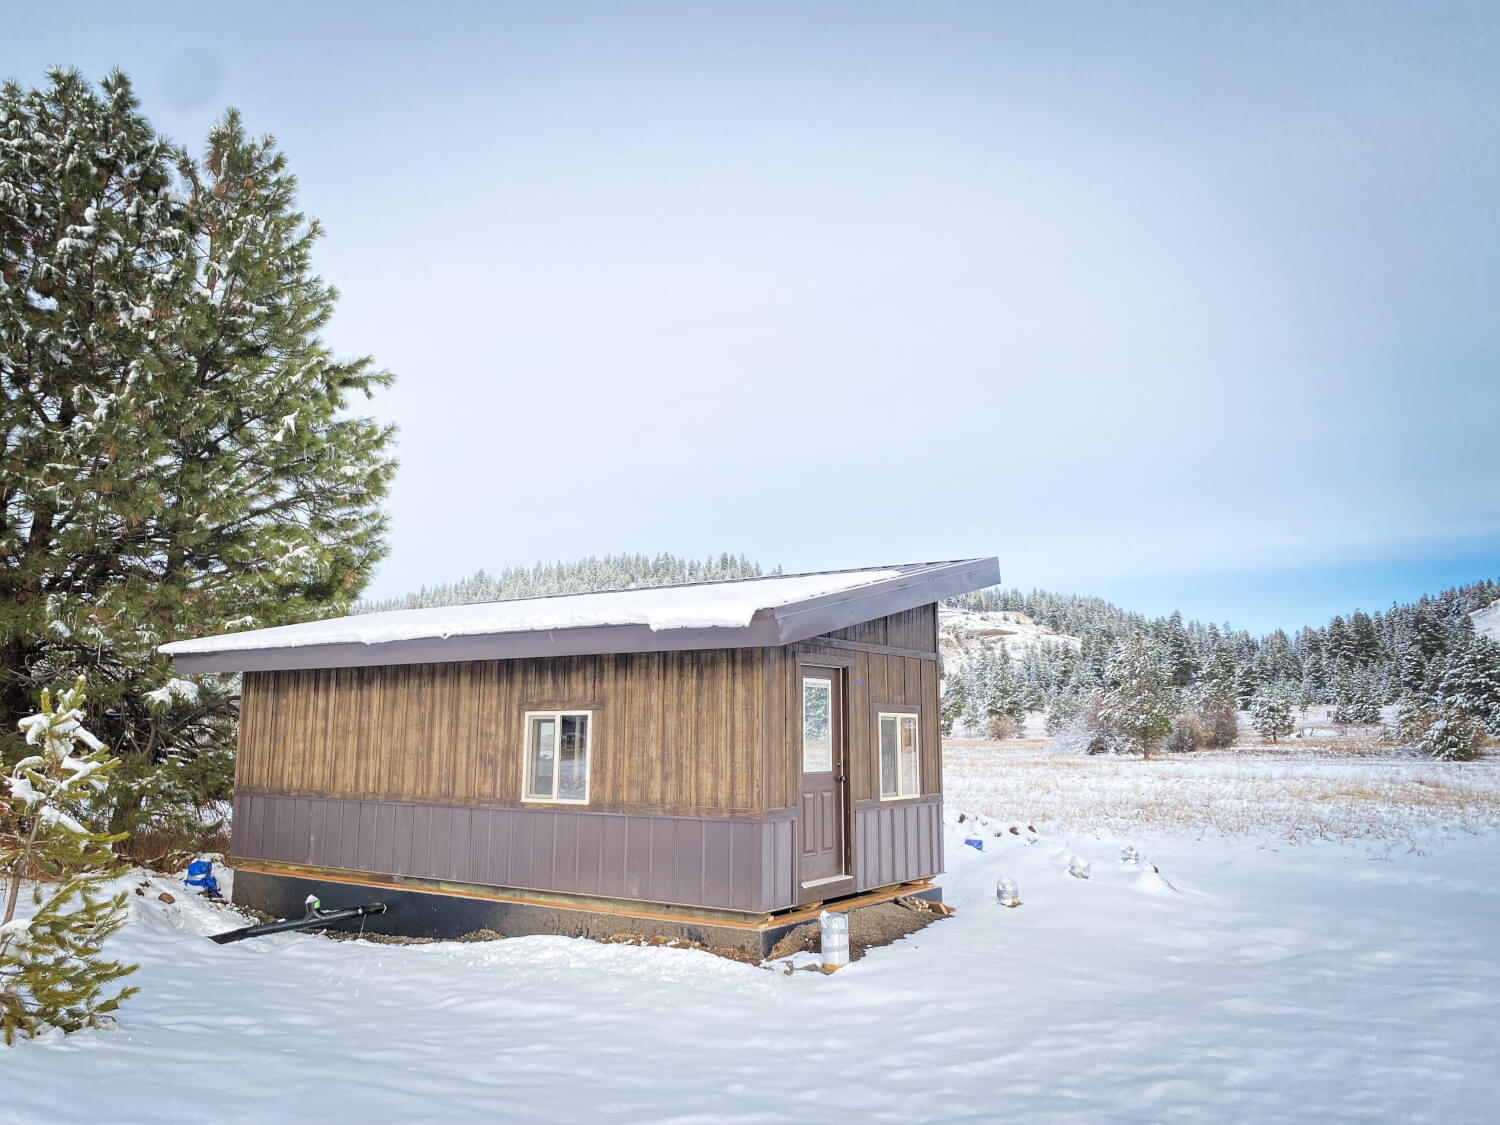 Ski Hill Cabin - series image